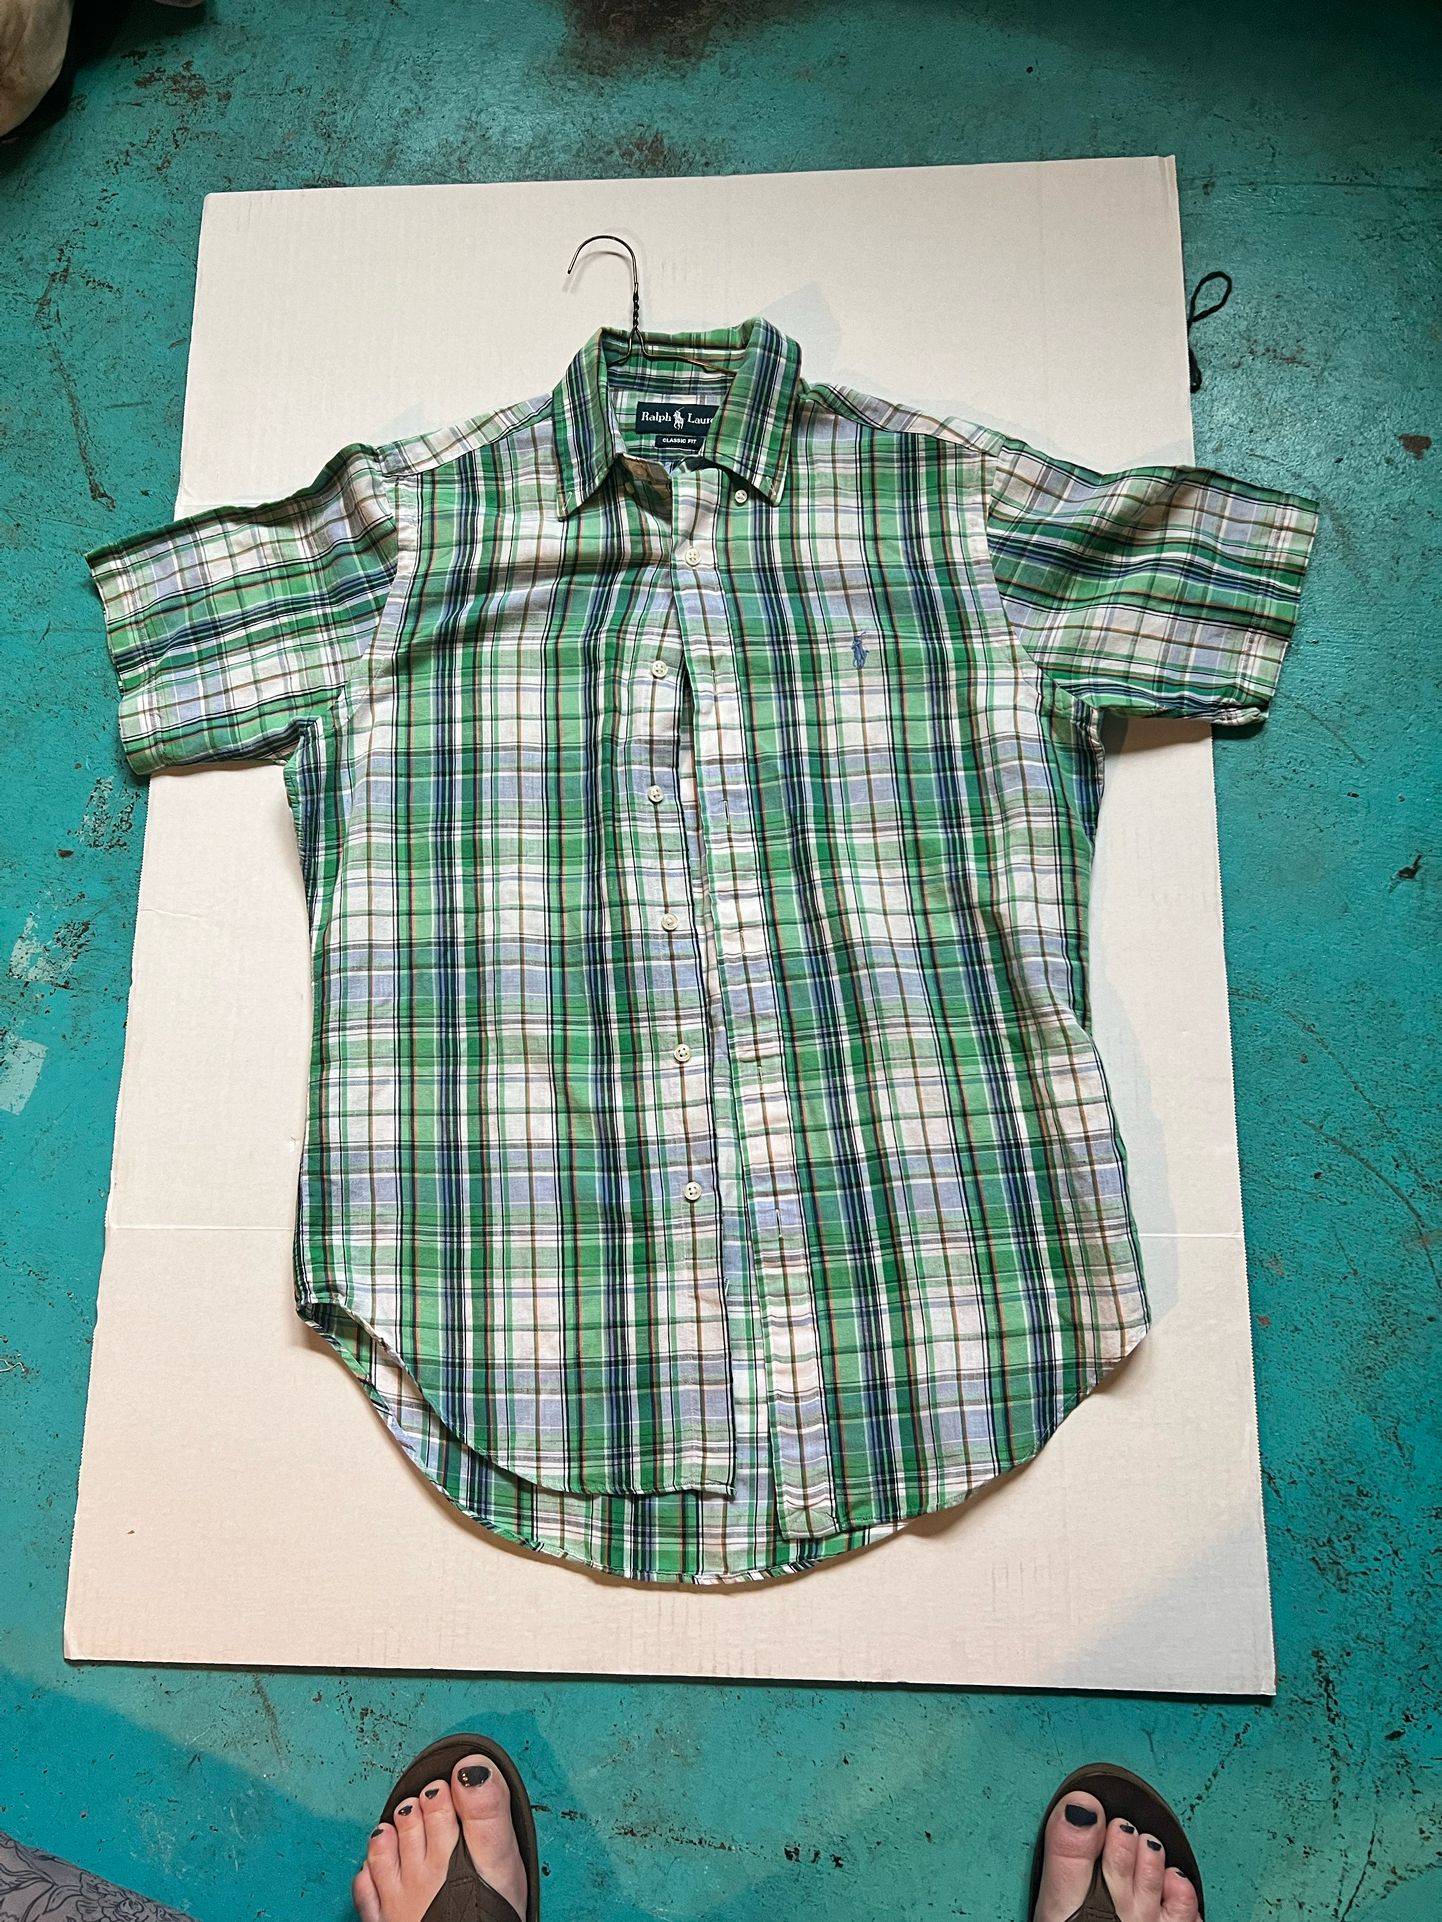 Ralph Lauren Dress Shirt Men's Short Sleeve Button Up Plaid Green Shirt